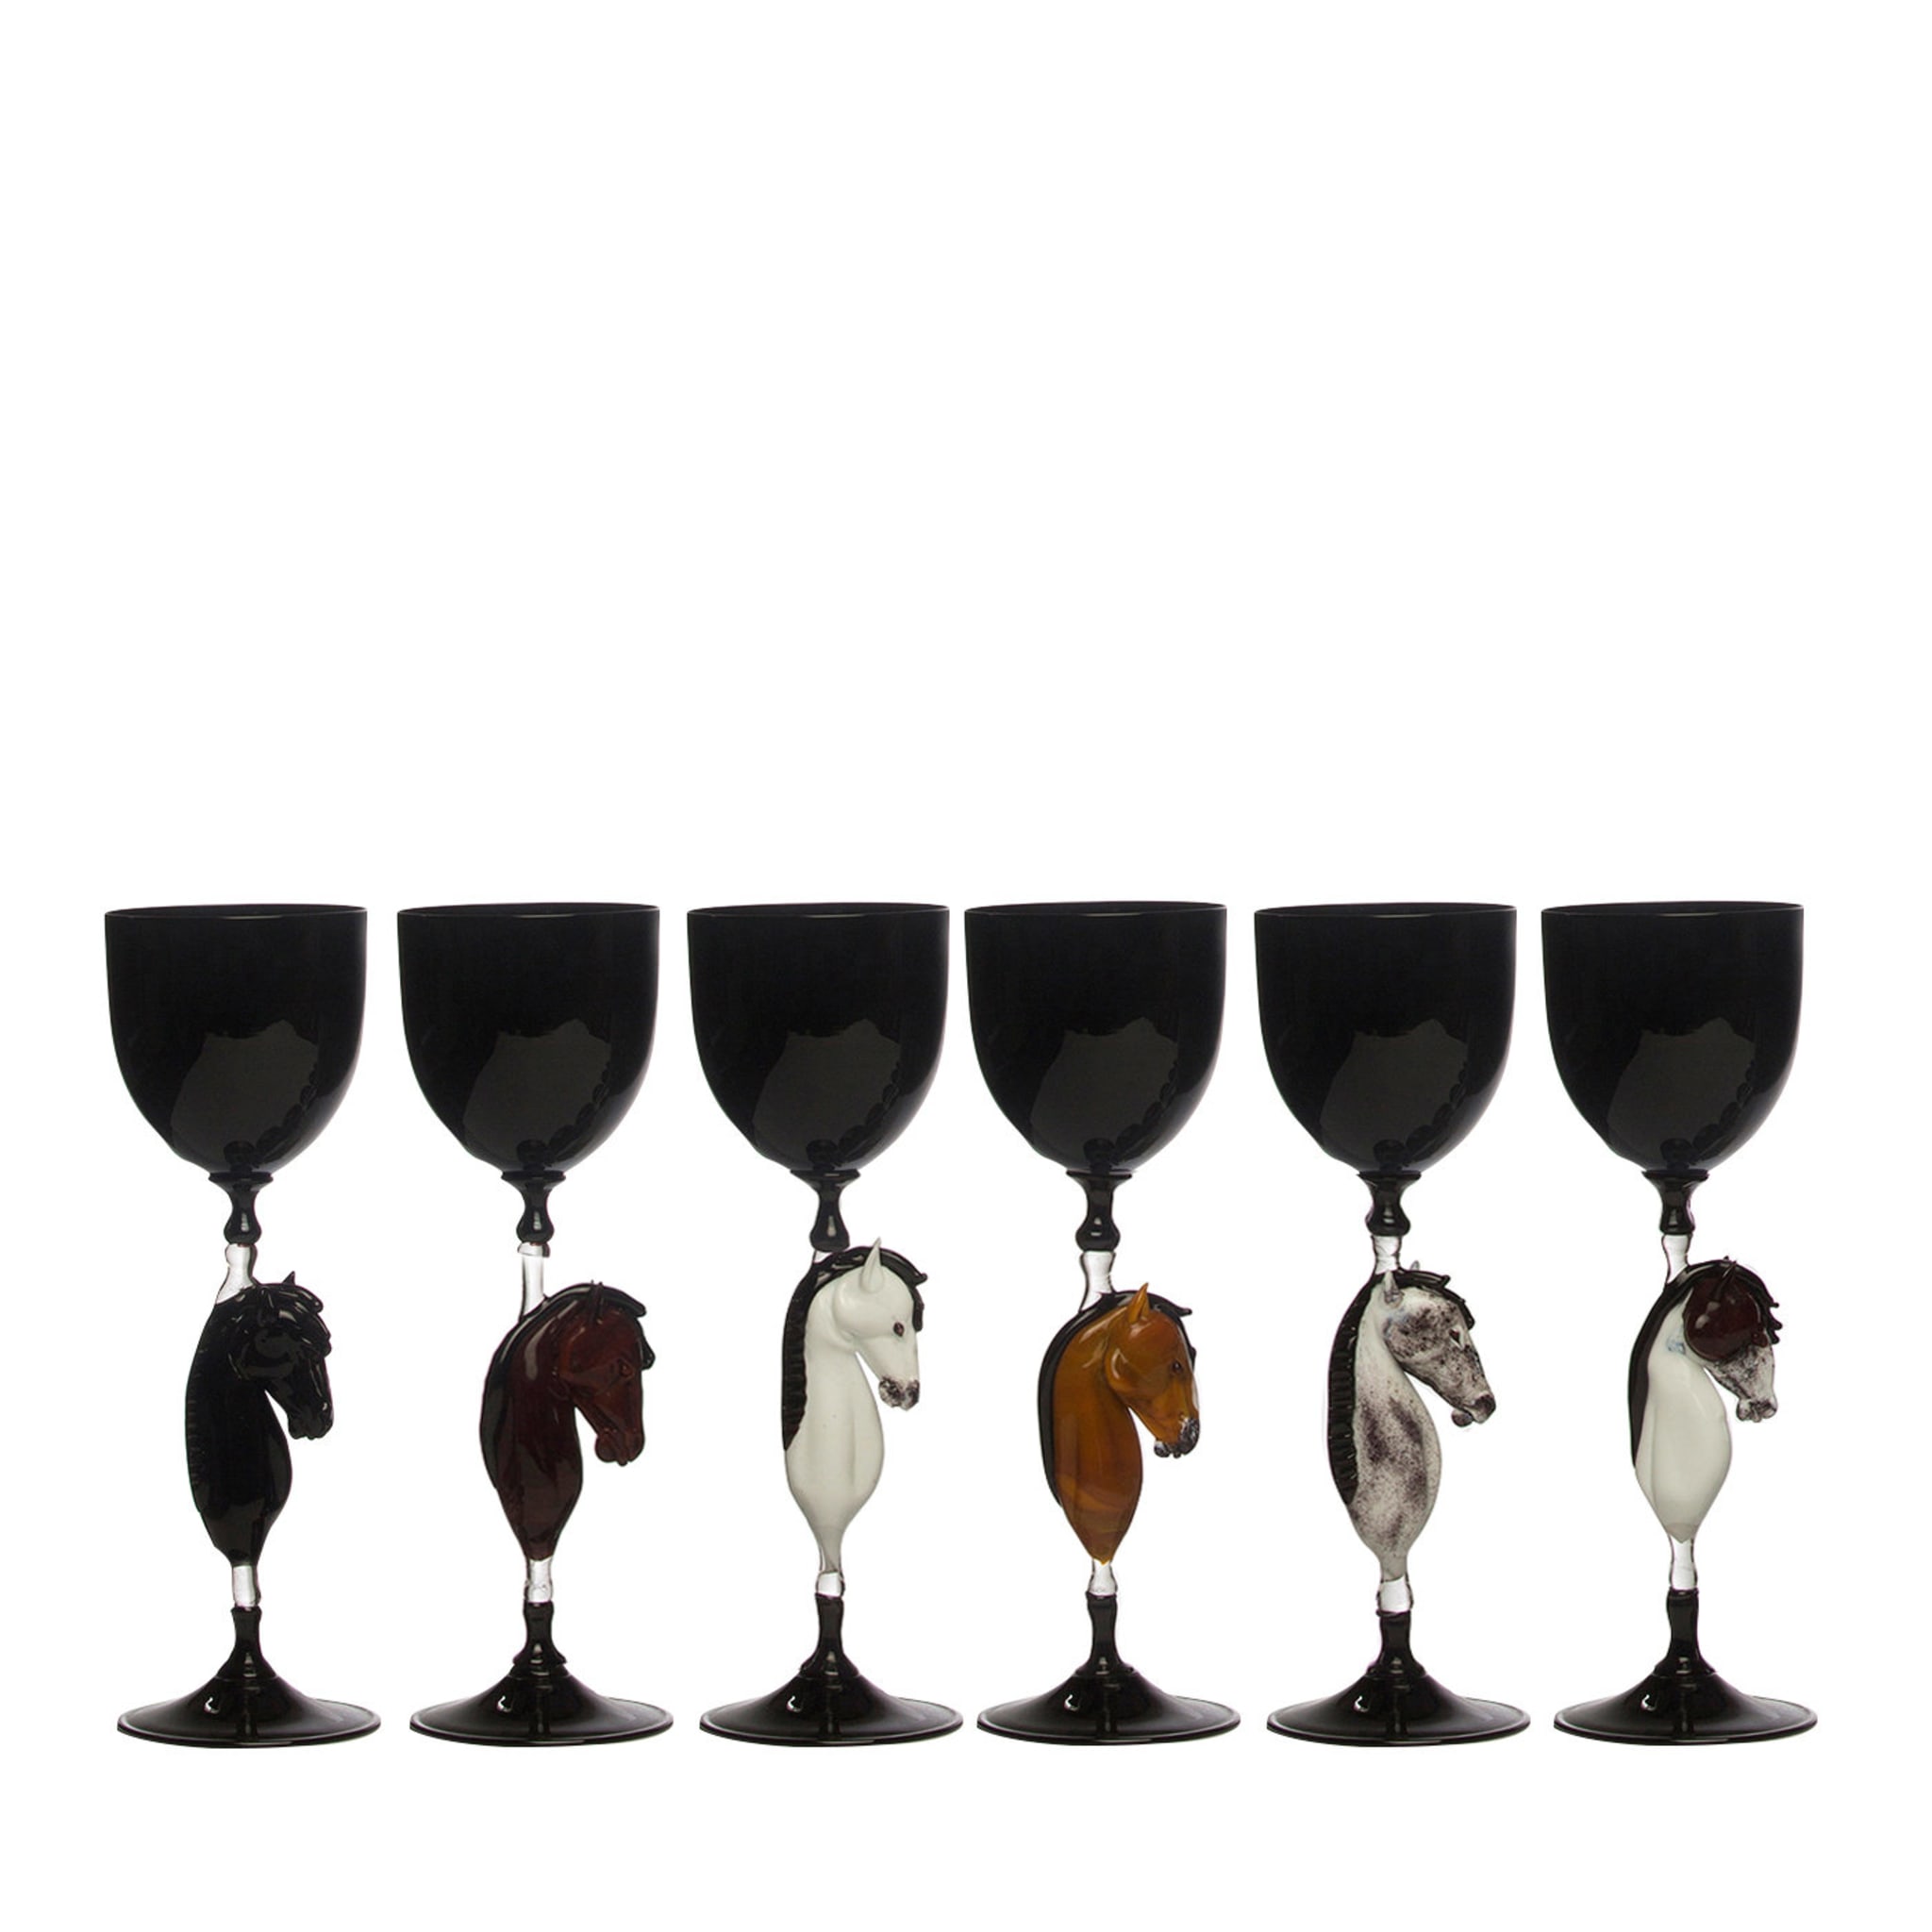 Set of 6 Horse Murano Glasses - Main view